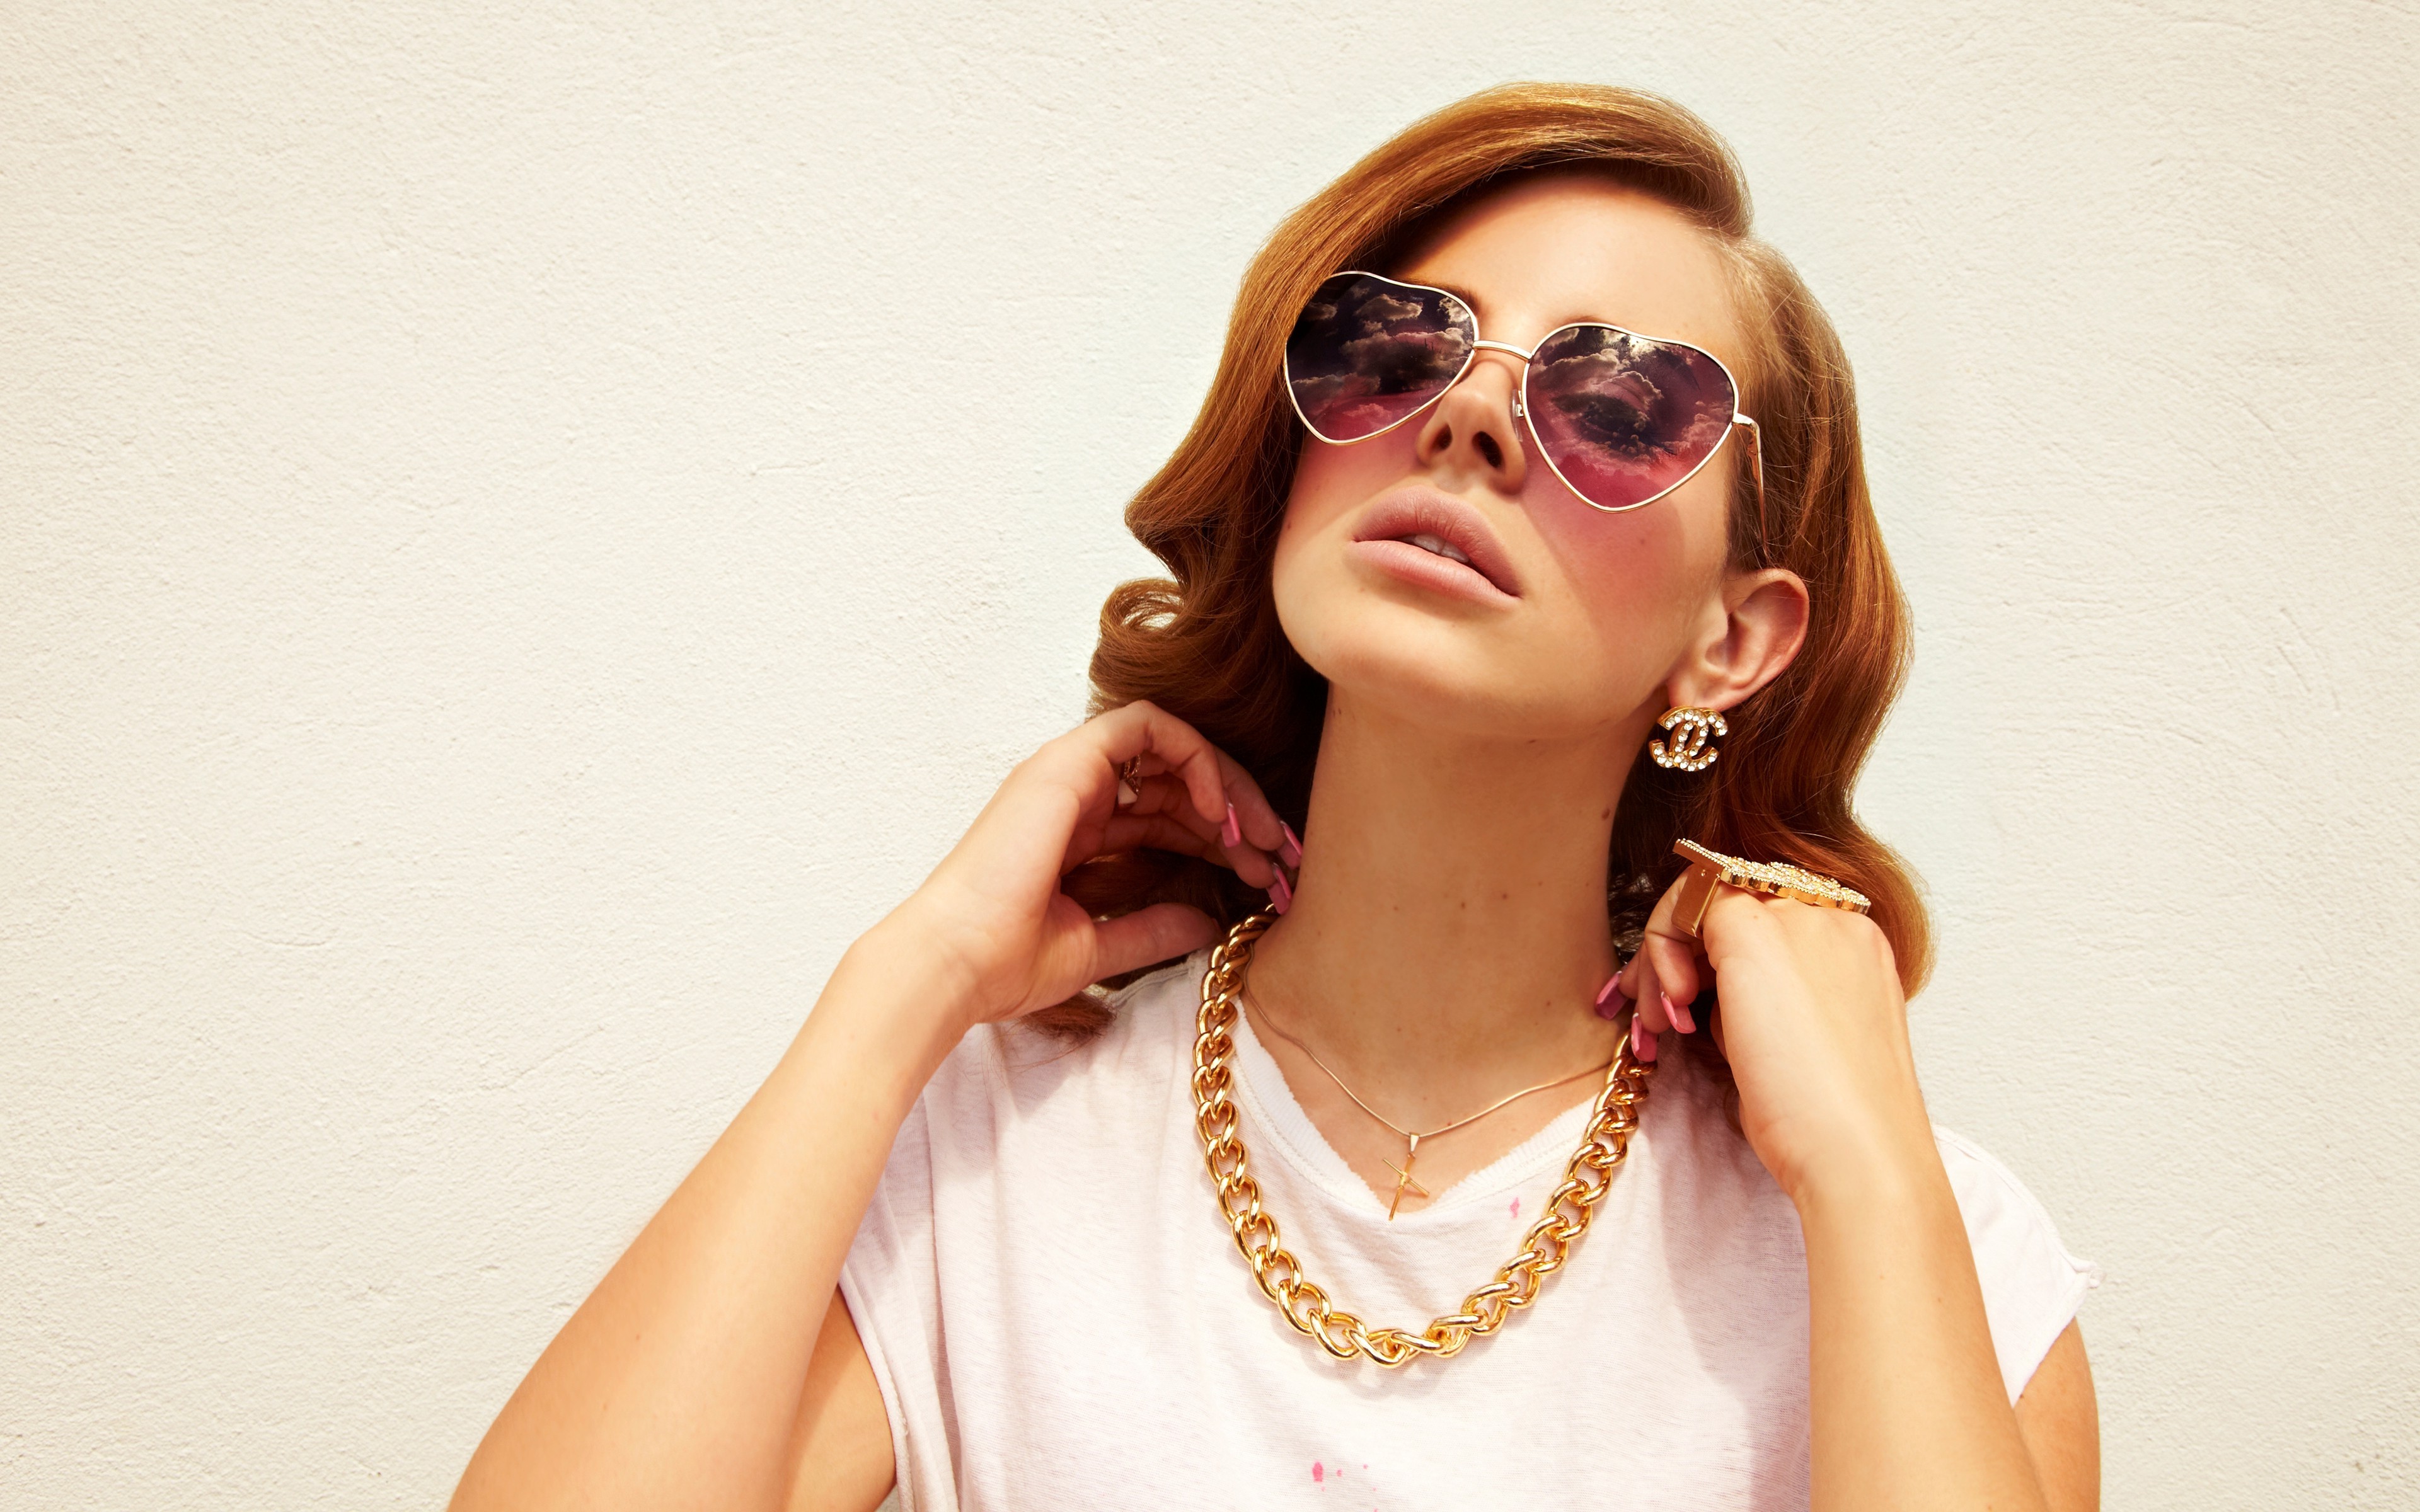 Lana Del Rey, Celebrity, Singer, Brunette, Women, Jewelry, Sunglasses, Simple Background Wallpaper